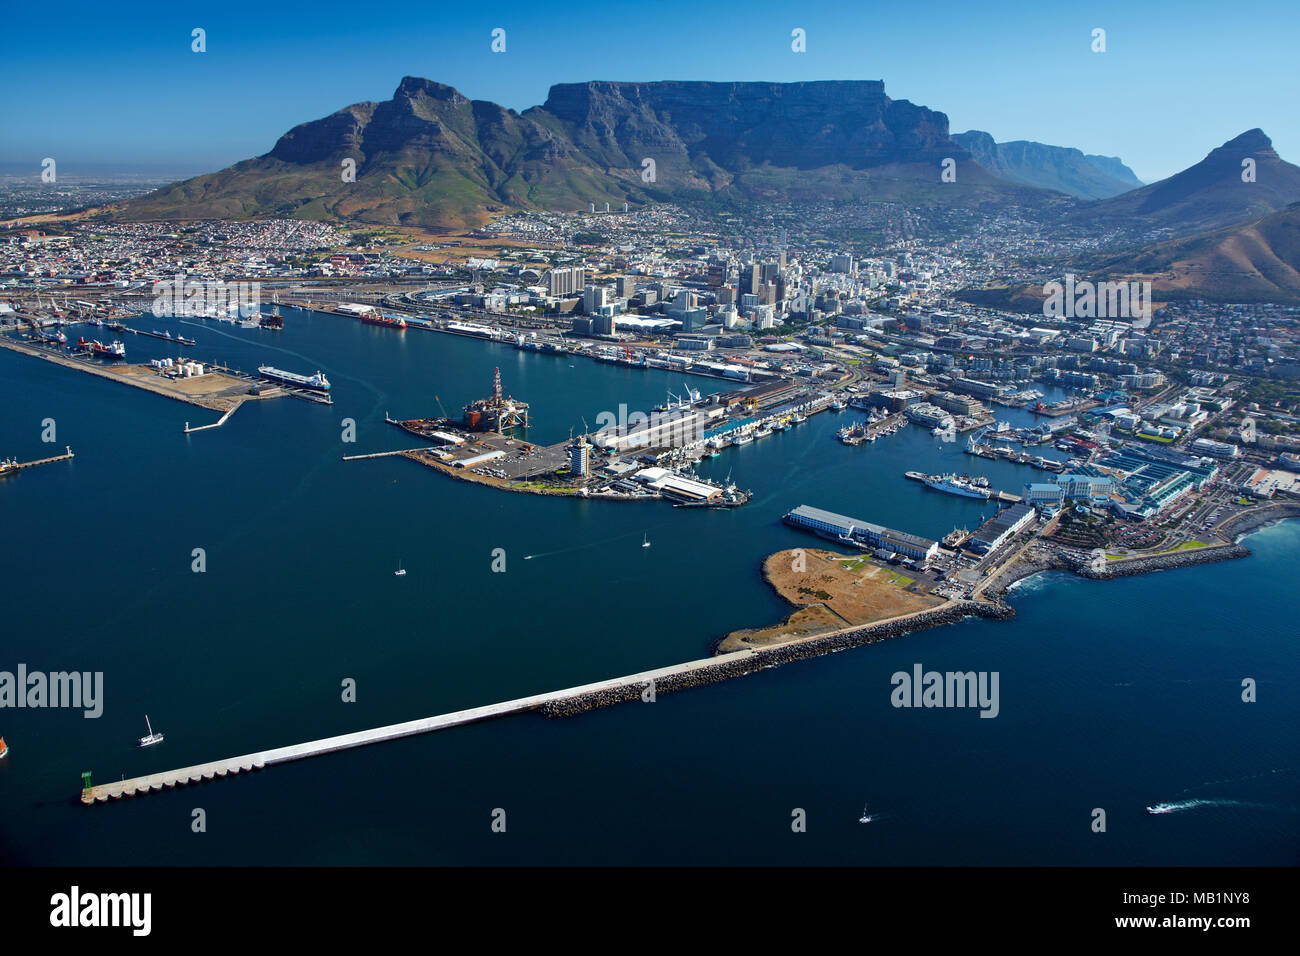 Port de Cape Town, V & A Waterfront, CBD, et Table Mountain, Cape Town, Afrique du Sud - vue aérienne Banque D'Images